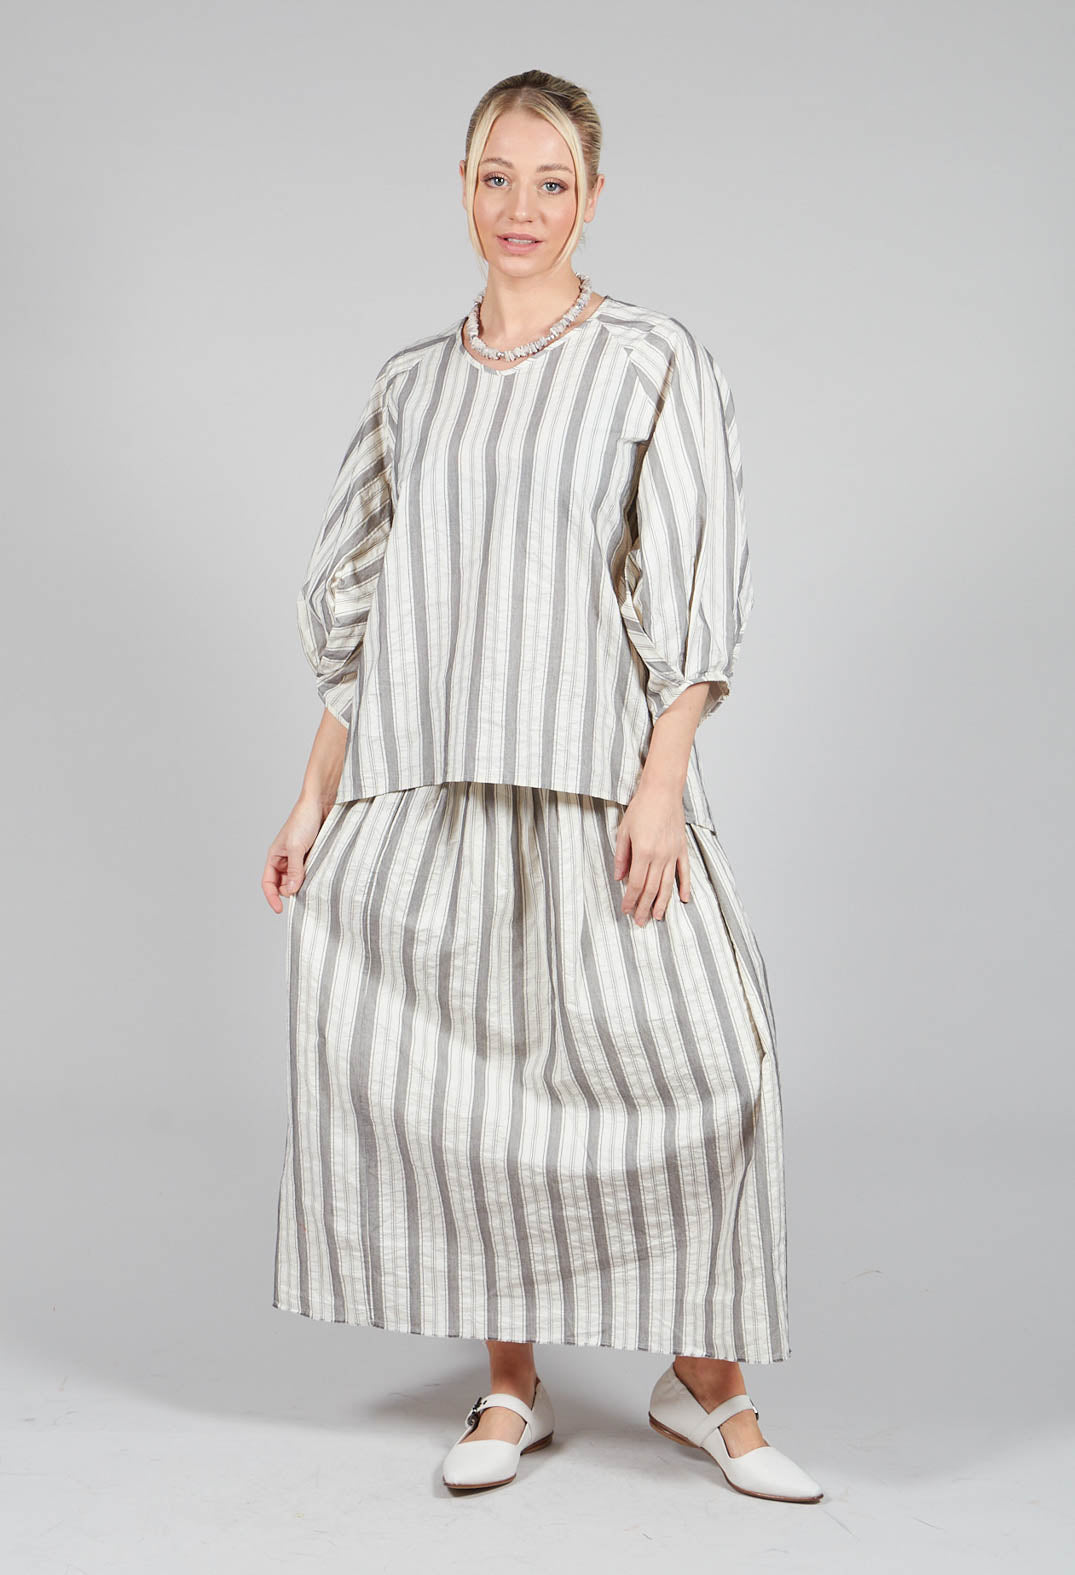 Lined Long Skirt in Stripe